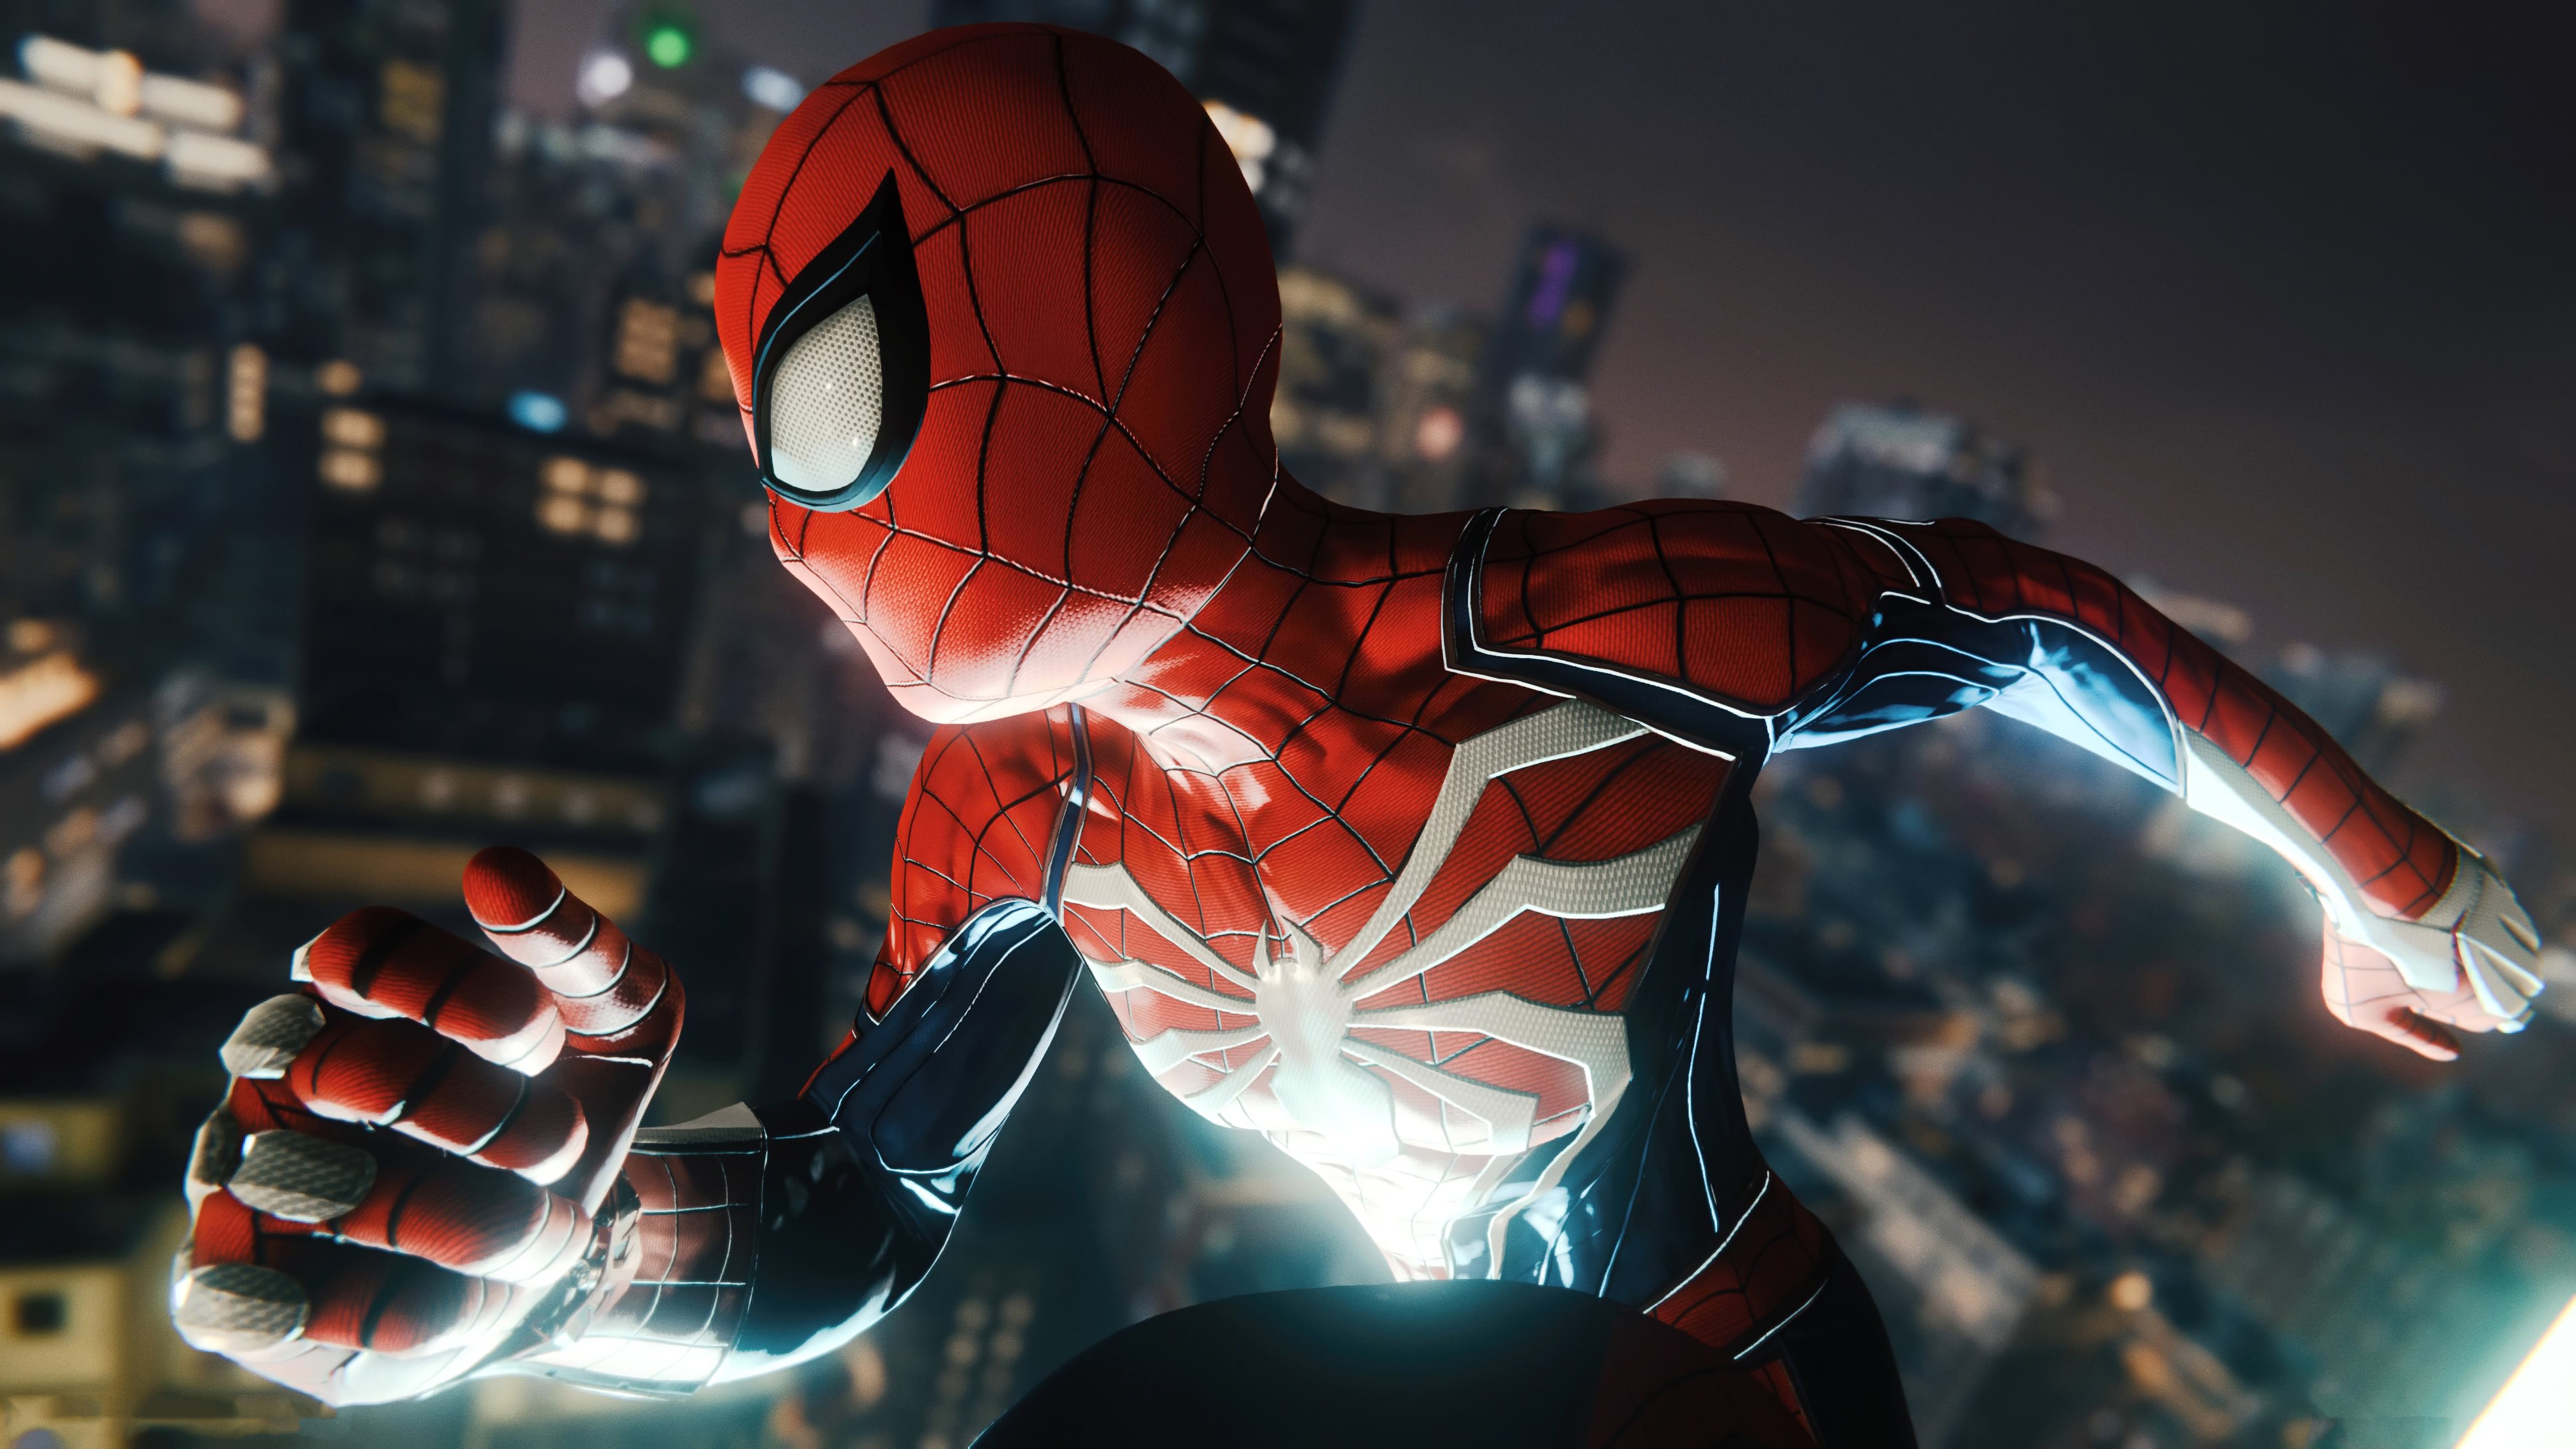 Hãy khám phá thế giới của Spiderman trên chơi PS4 với đồ họa sắc nét 5K và tải ngay hình nền cho MacBook Air của bạn để cảm nhận cùng nhân vật siêu anh hùng trong trò chơi đầy hứng khởi này!